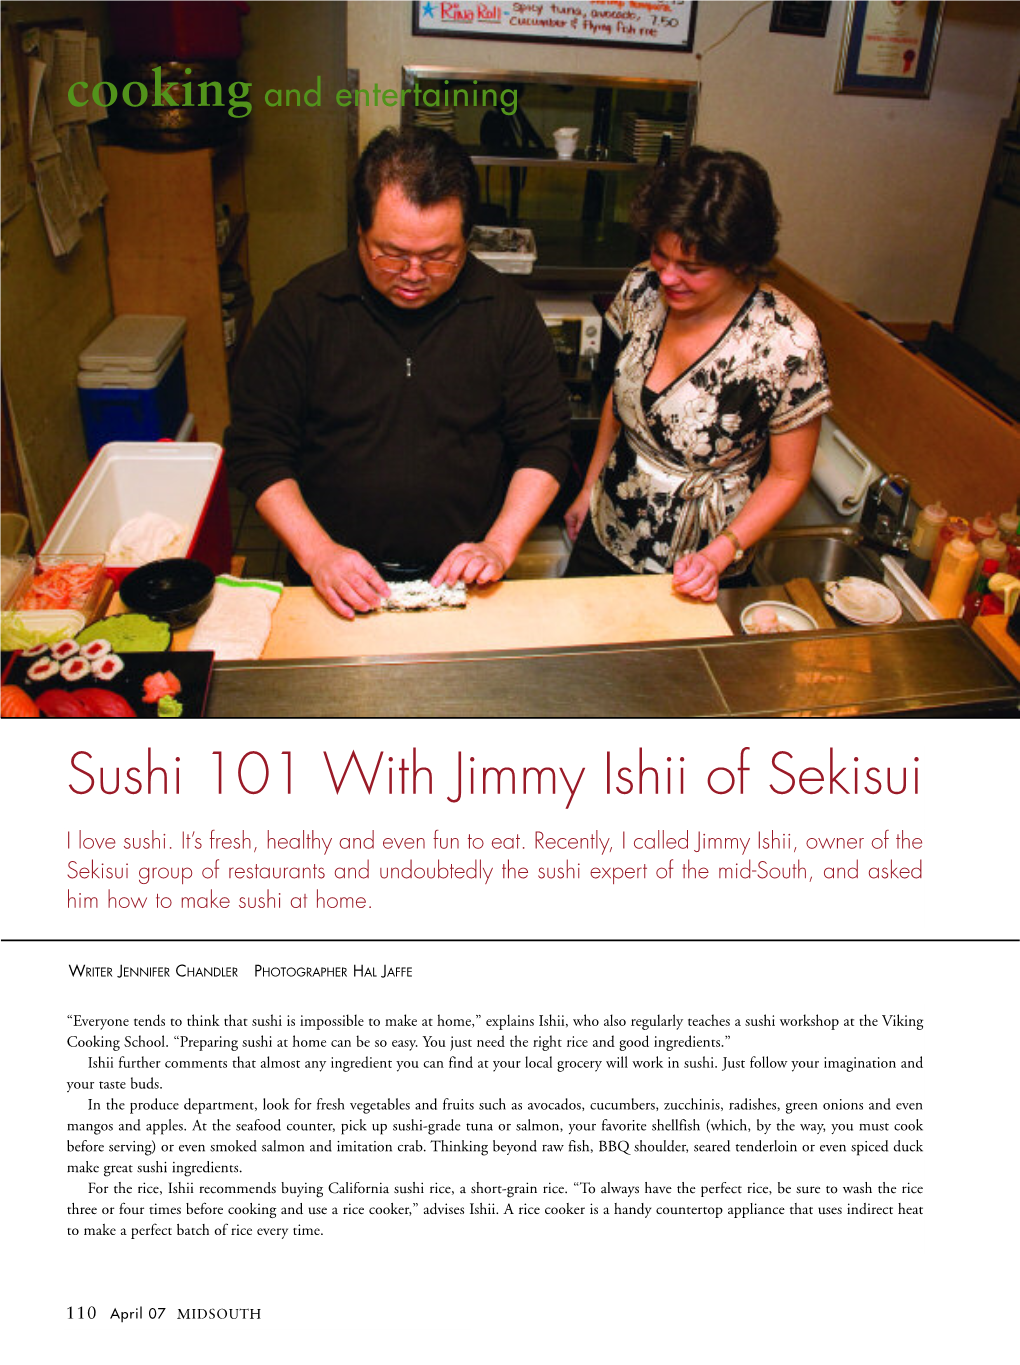 Sushi 101 with Jimmy Ishii of Sekisui